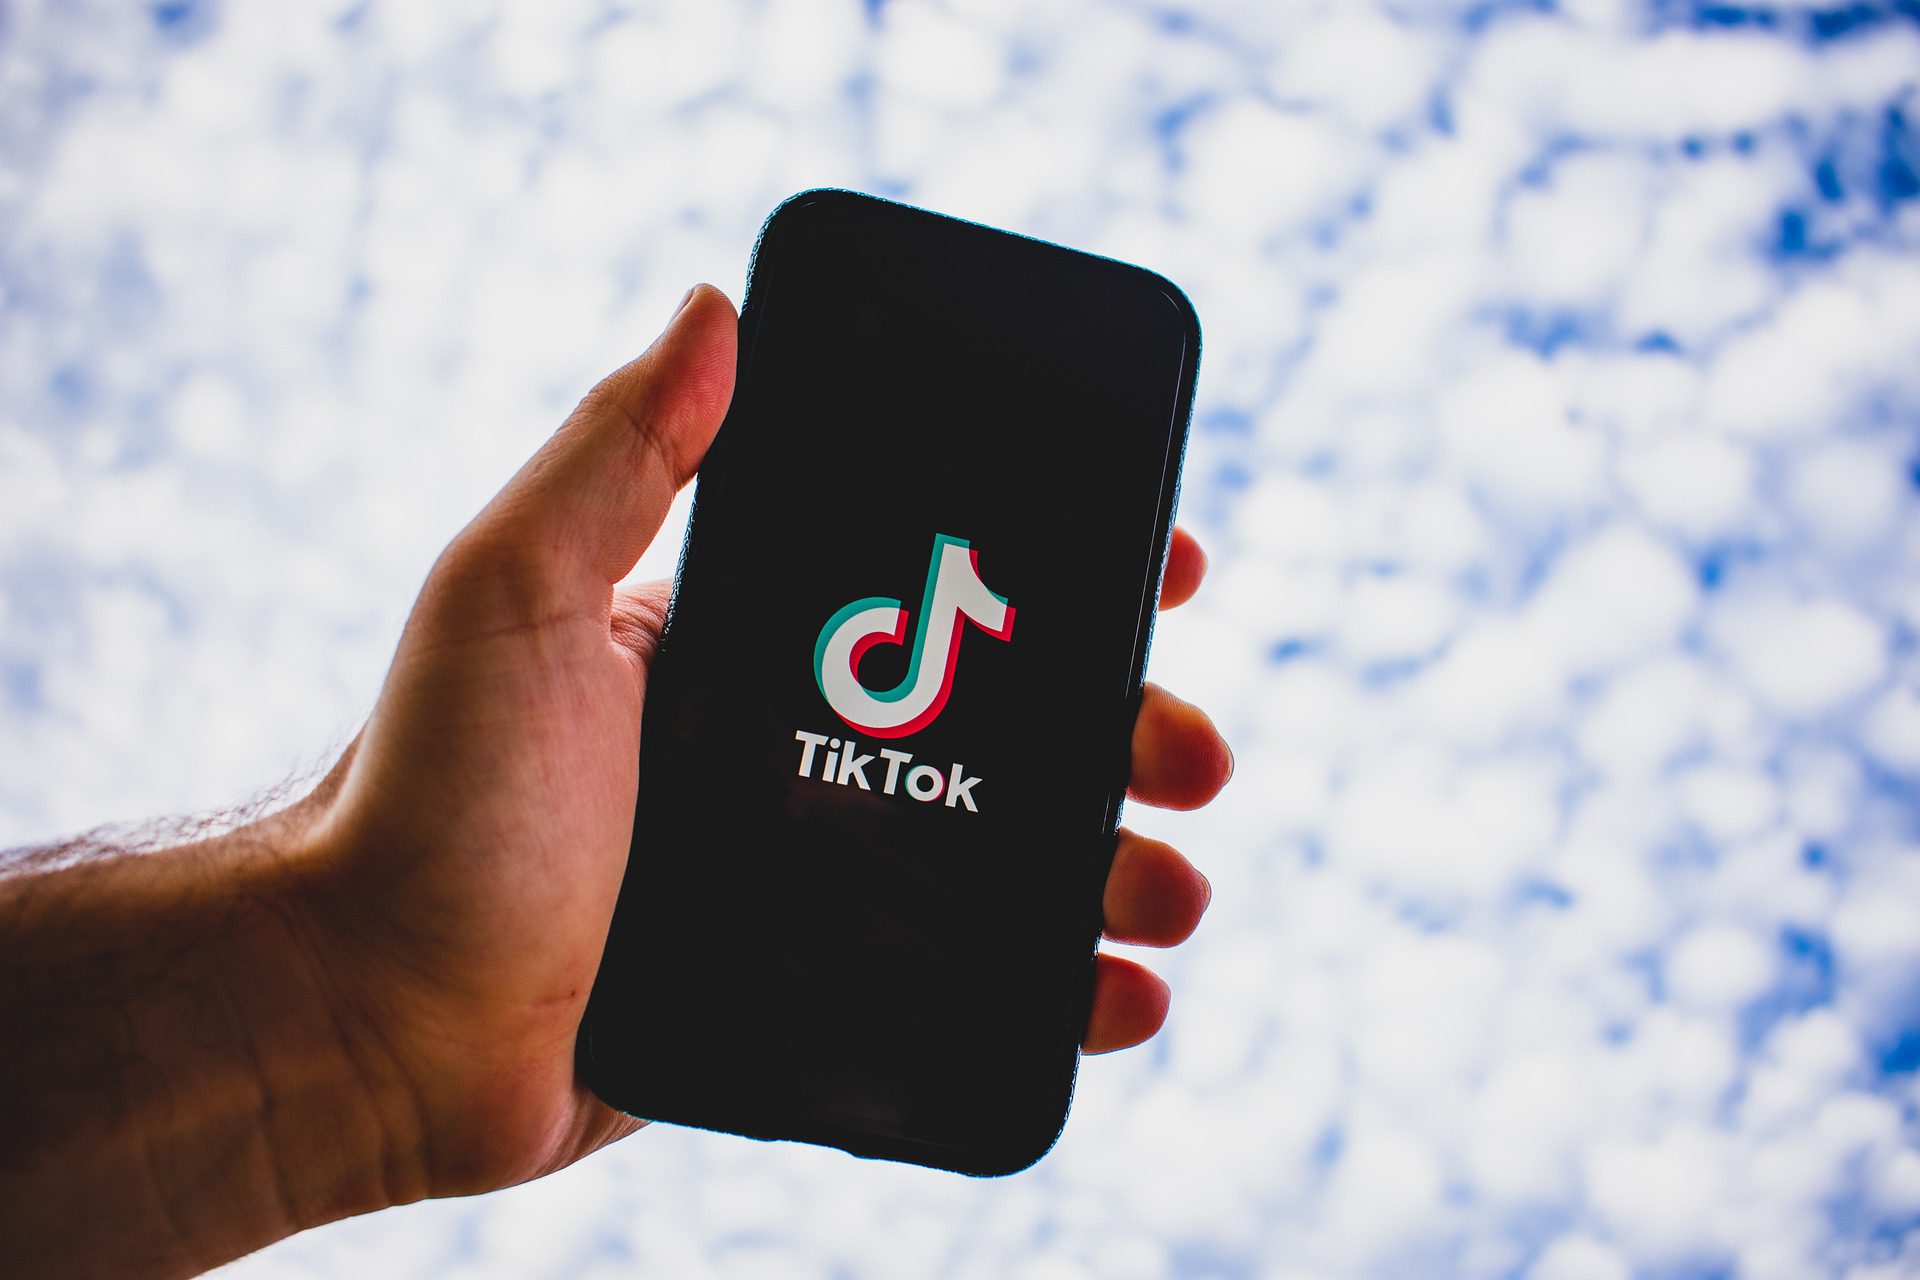 TikTok devient l’application la plus téléchargée sur mobile devant Facebook